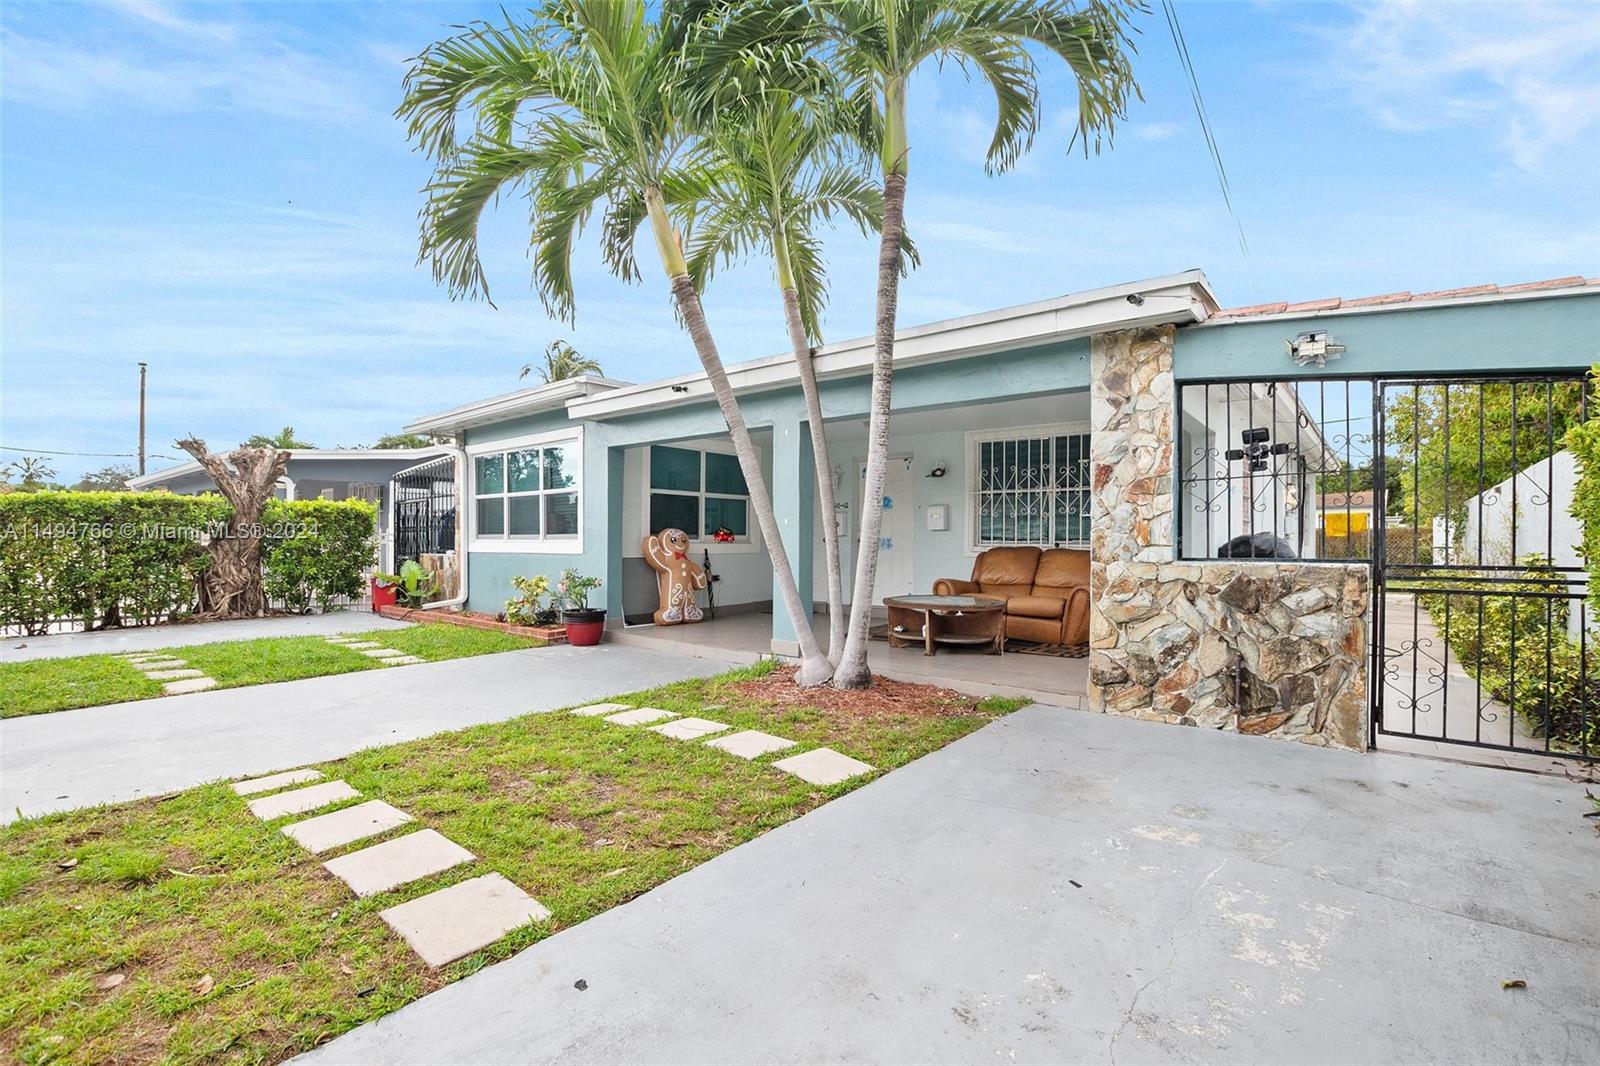 Rental Property at 1610 Nw 32nd Ave, Miami, Broward County, Florida -  - $650,000 MO.